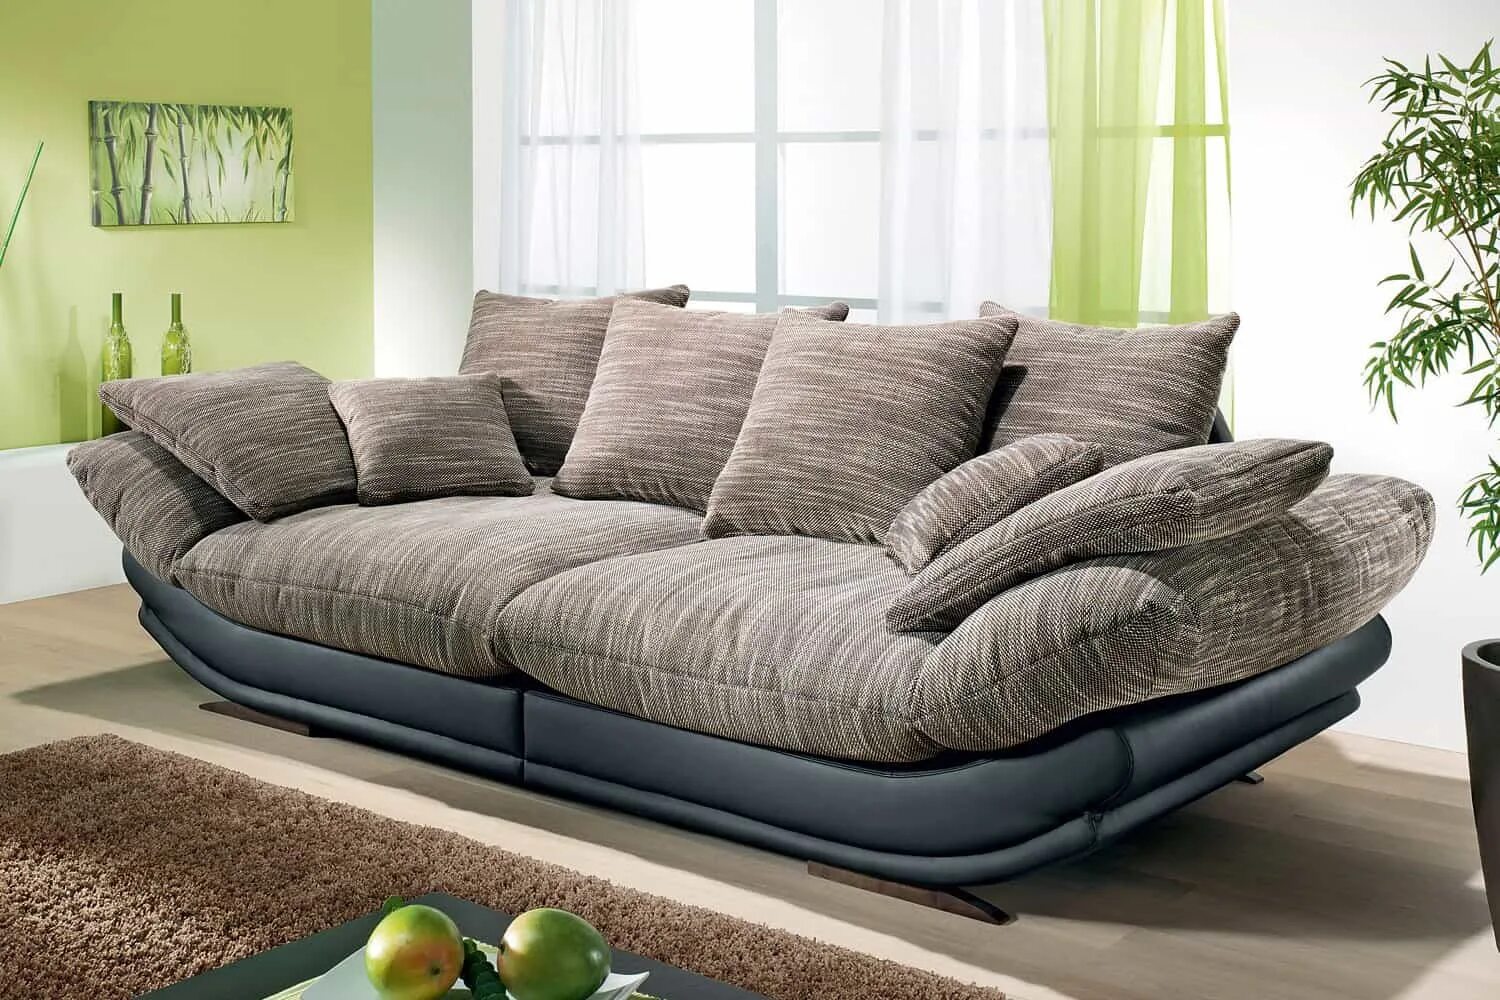 Диваны купить в москве в интернет магазине. Авиньон макси диван. Красивый стильный диван. Современный мягкий диван. Красивые диваны для гостиной.